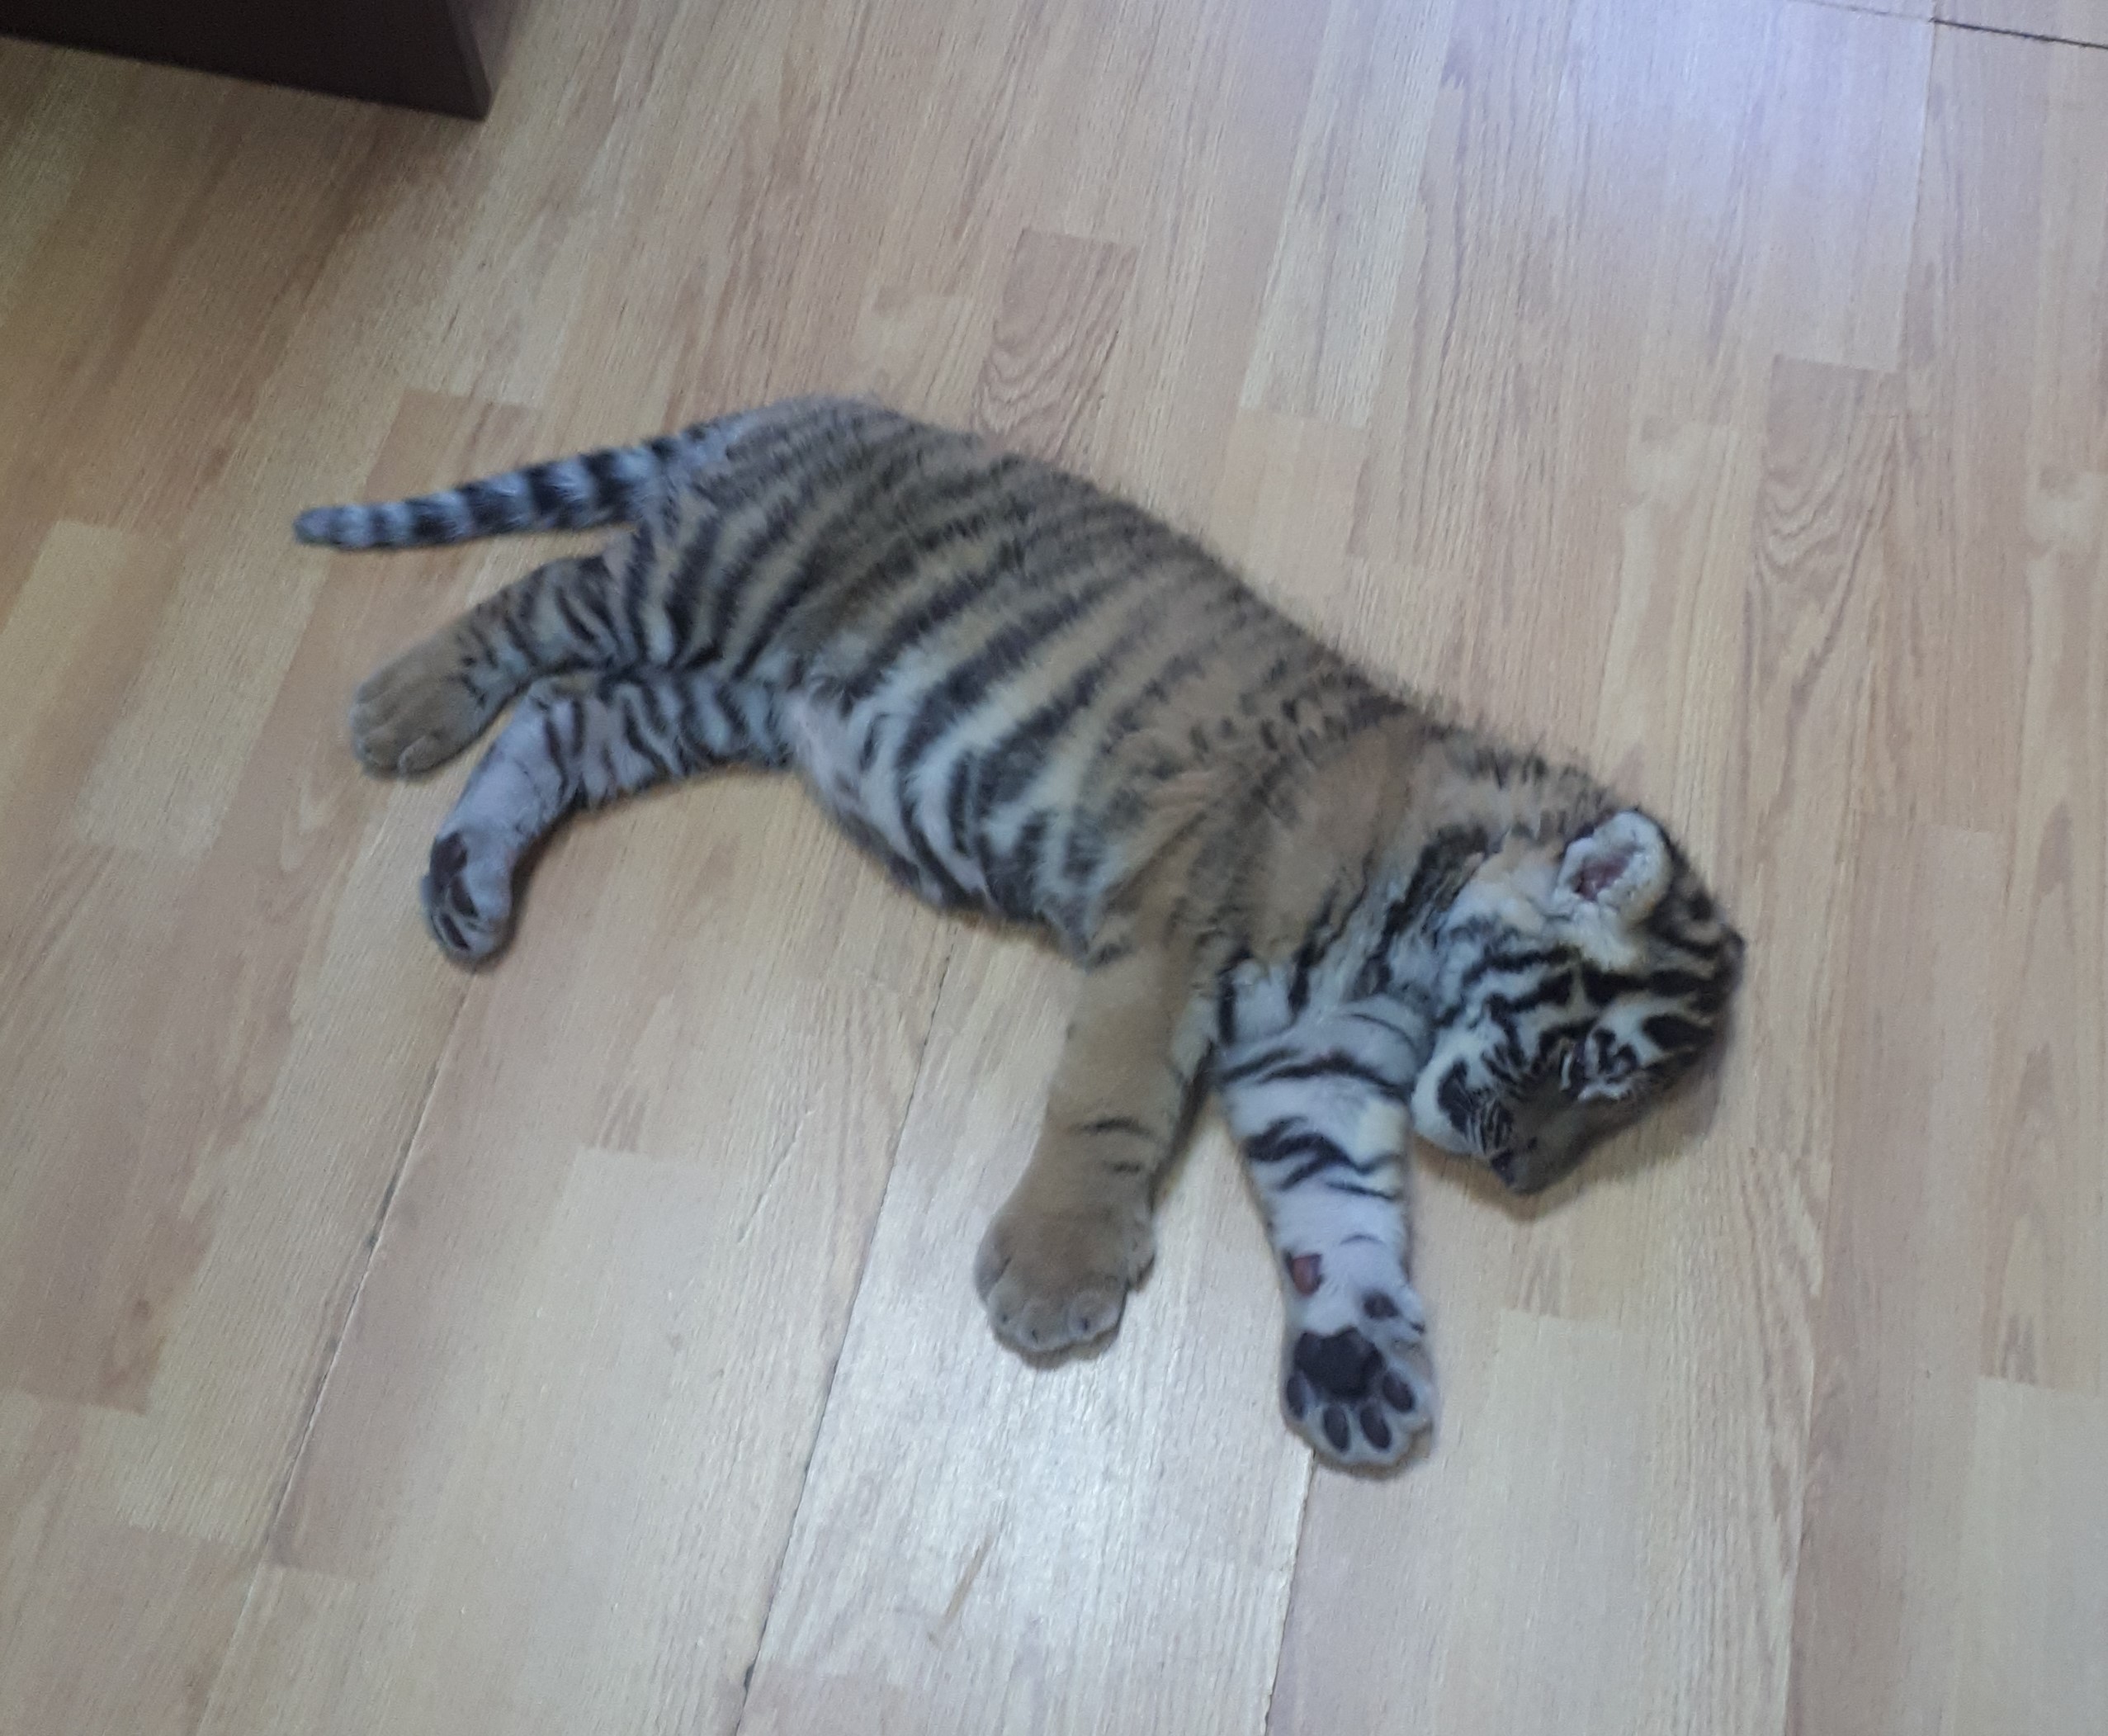 Росприроднадзор проверил информацию о незаконном содержании тигренка в Набережных Челнах